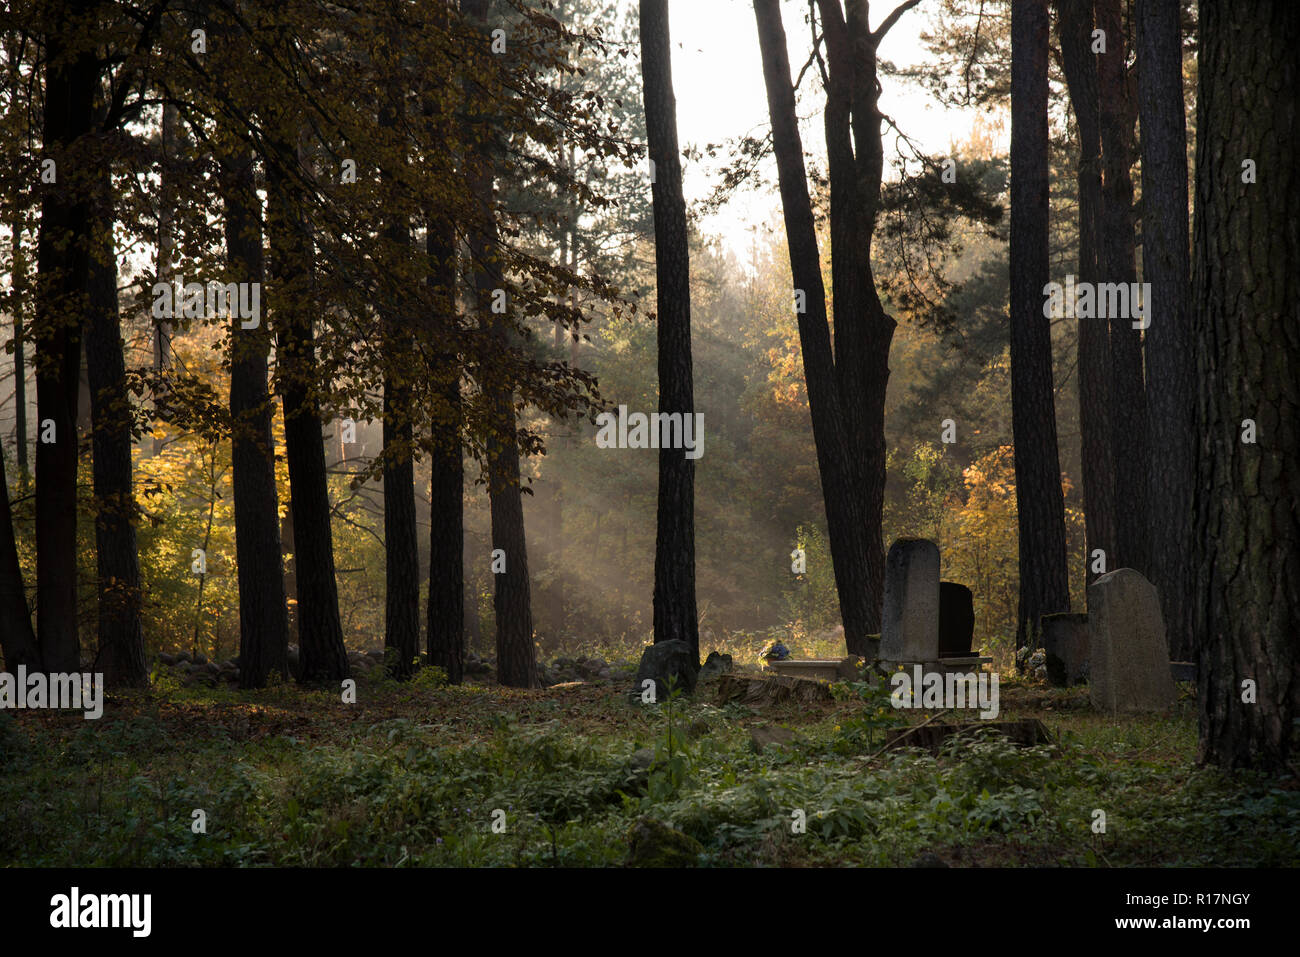 Cimitero musulmano, Kruszyniany, luogo di sepoltura, autunno, alberi, pace, luogo di culto e di preghiera, gli oggetti contrassegnati per la rimozione definitiva Foto Stock